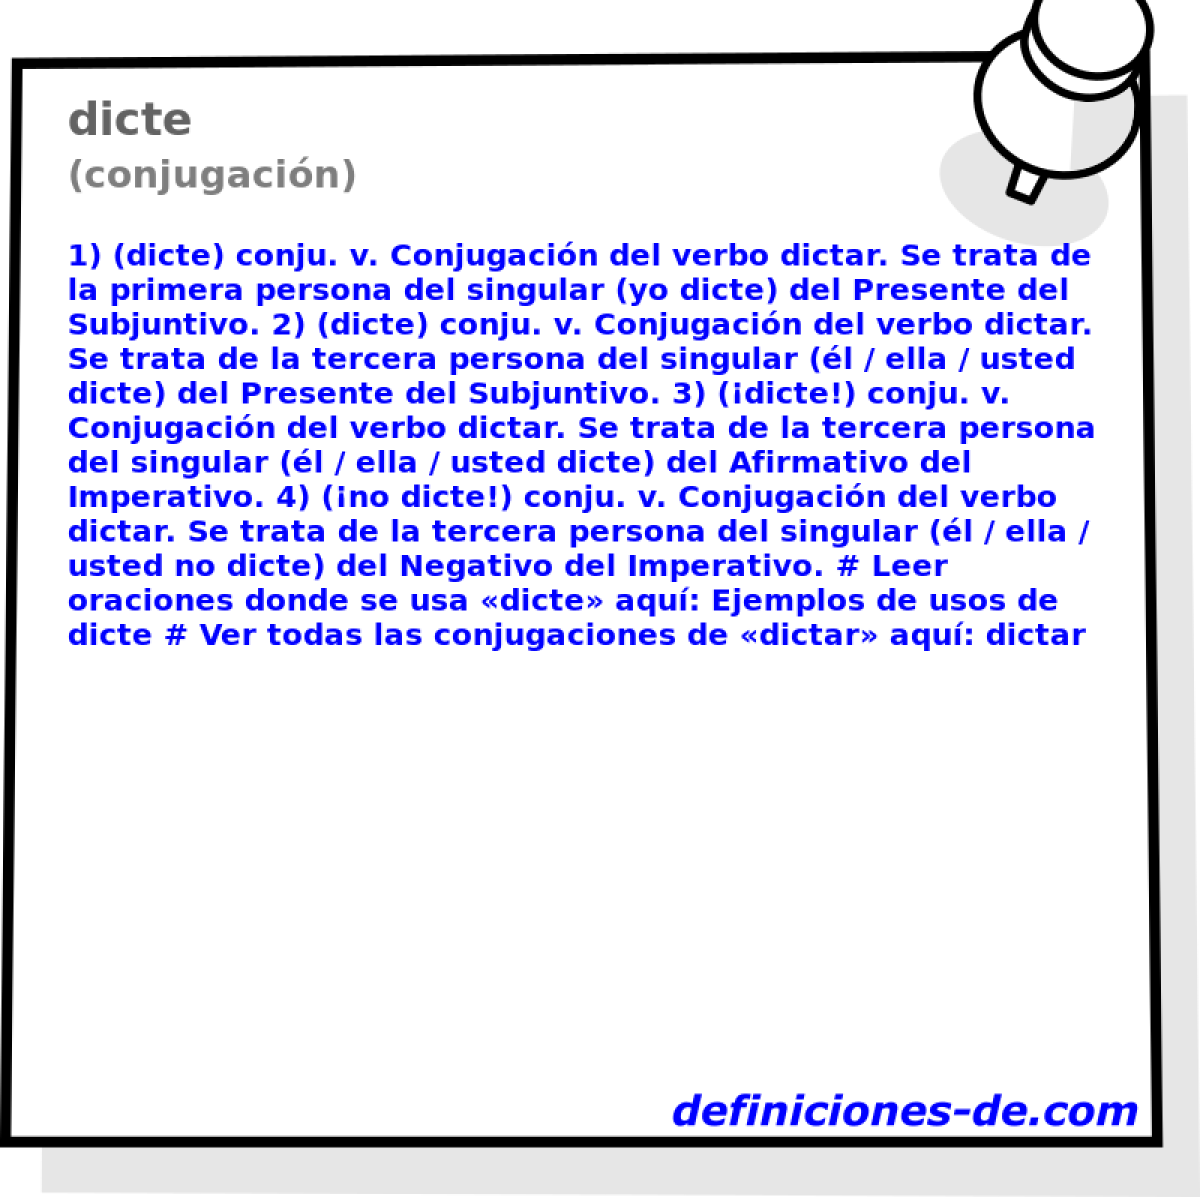 dicte (conjugacin)